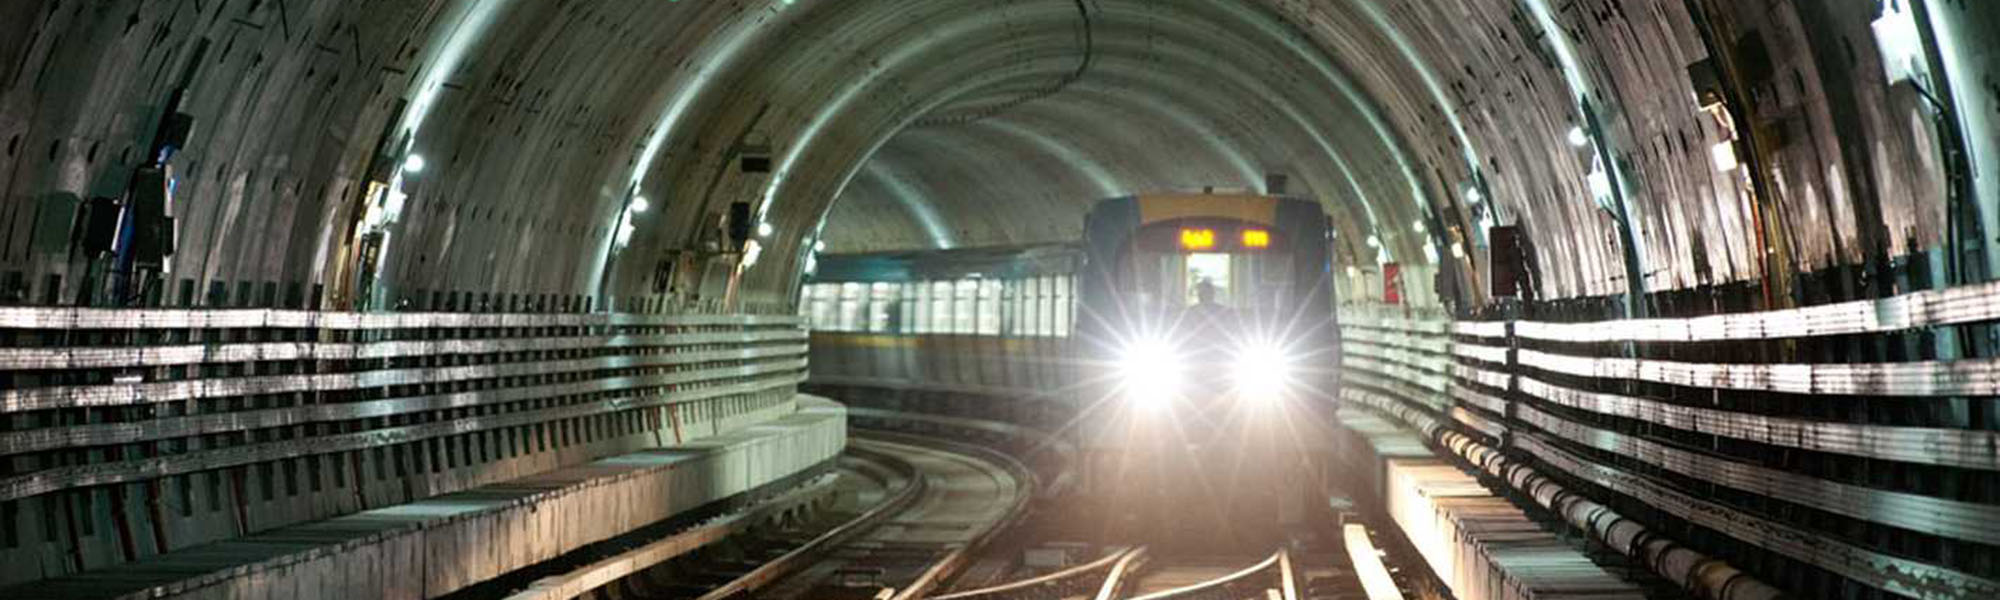 Cairo Metro - Line 3